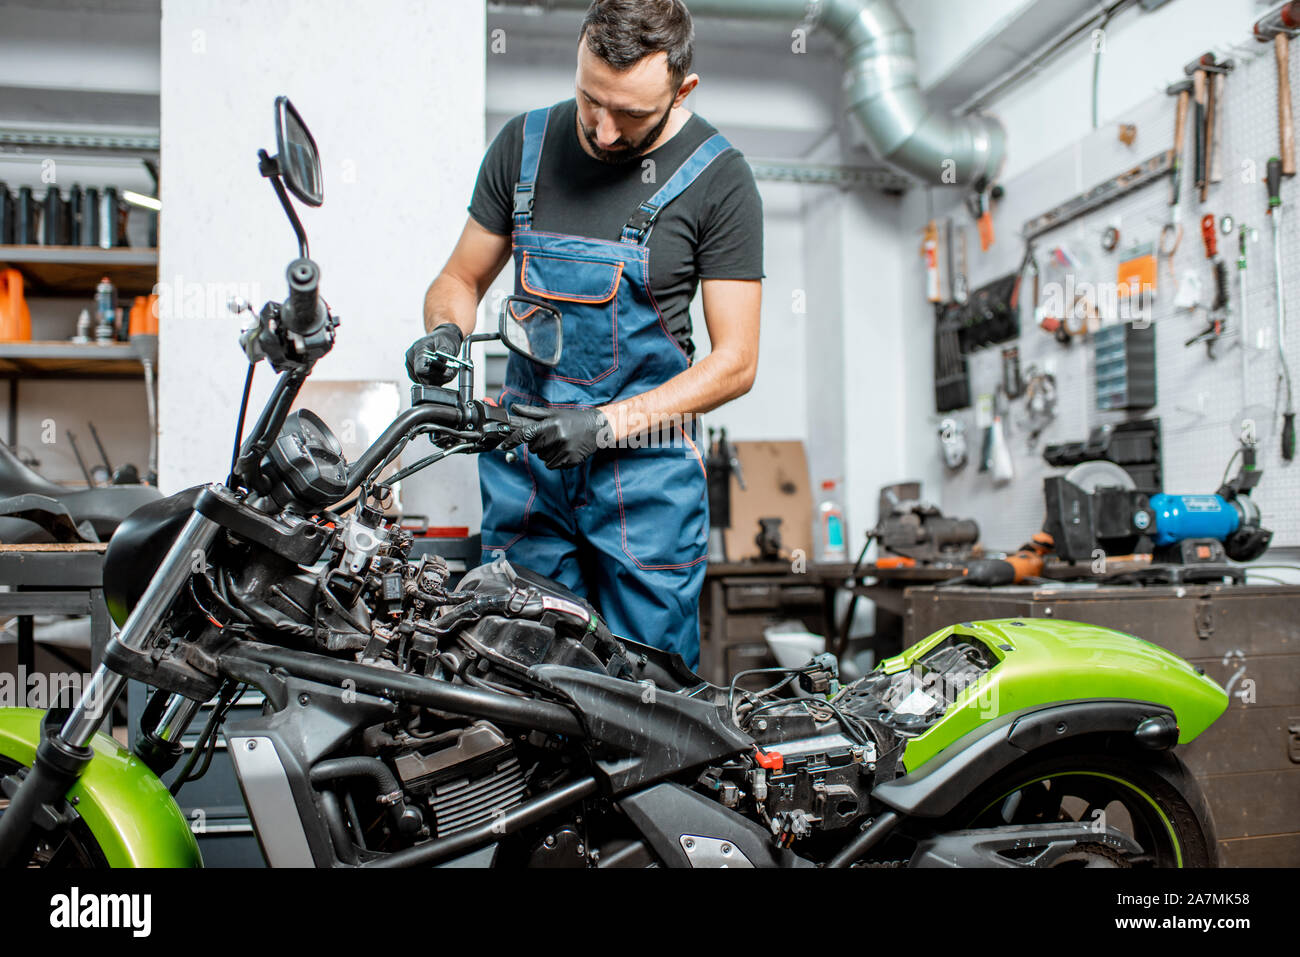 Mechaniker in Latzhosen Motorrad reparieren, Messen spiegel halter für  Ersatz oder Tuning bei dem Workshop im Innenbereich Stockfotografie - Alamy